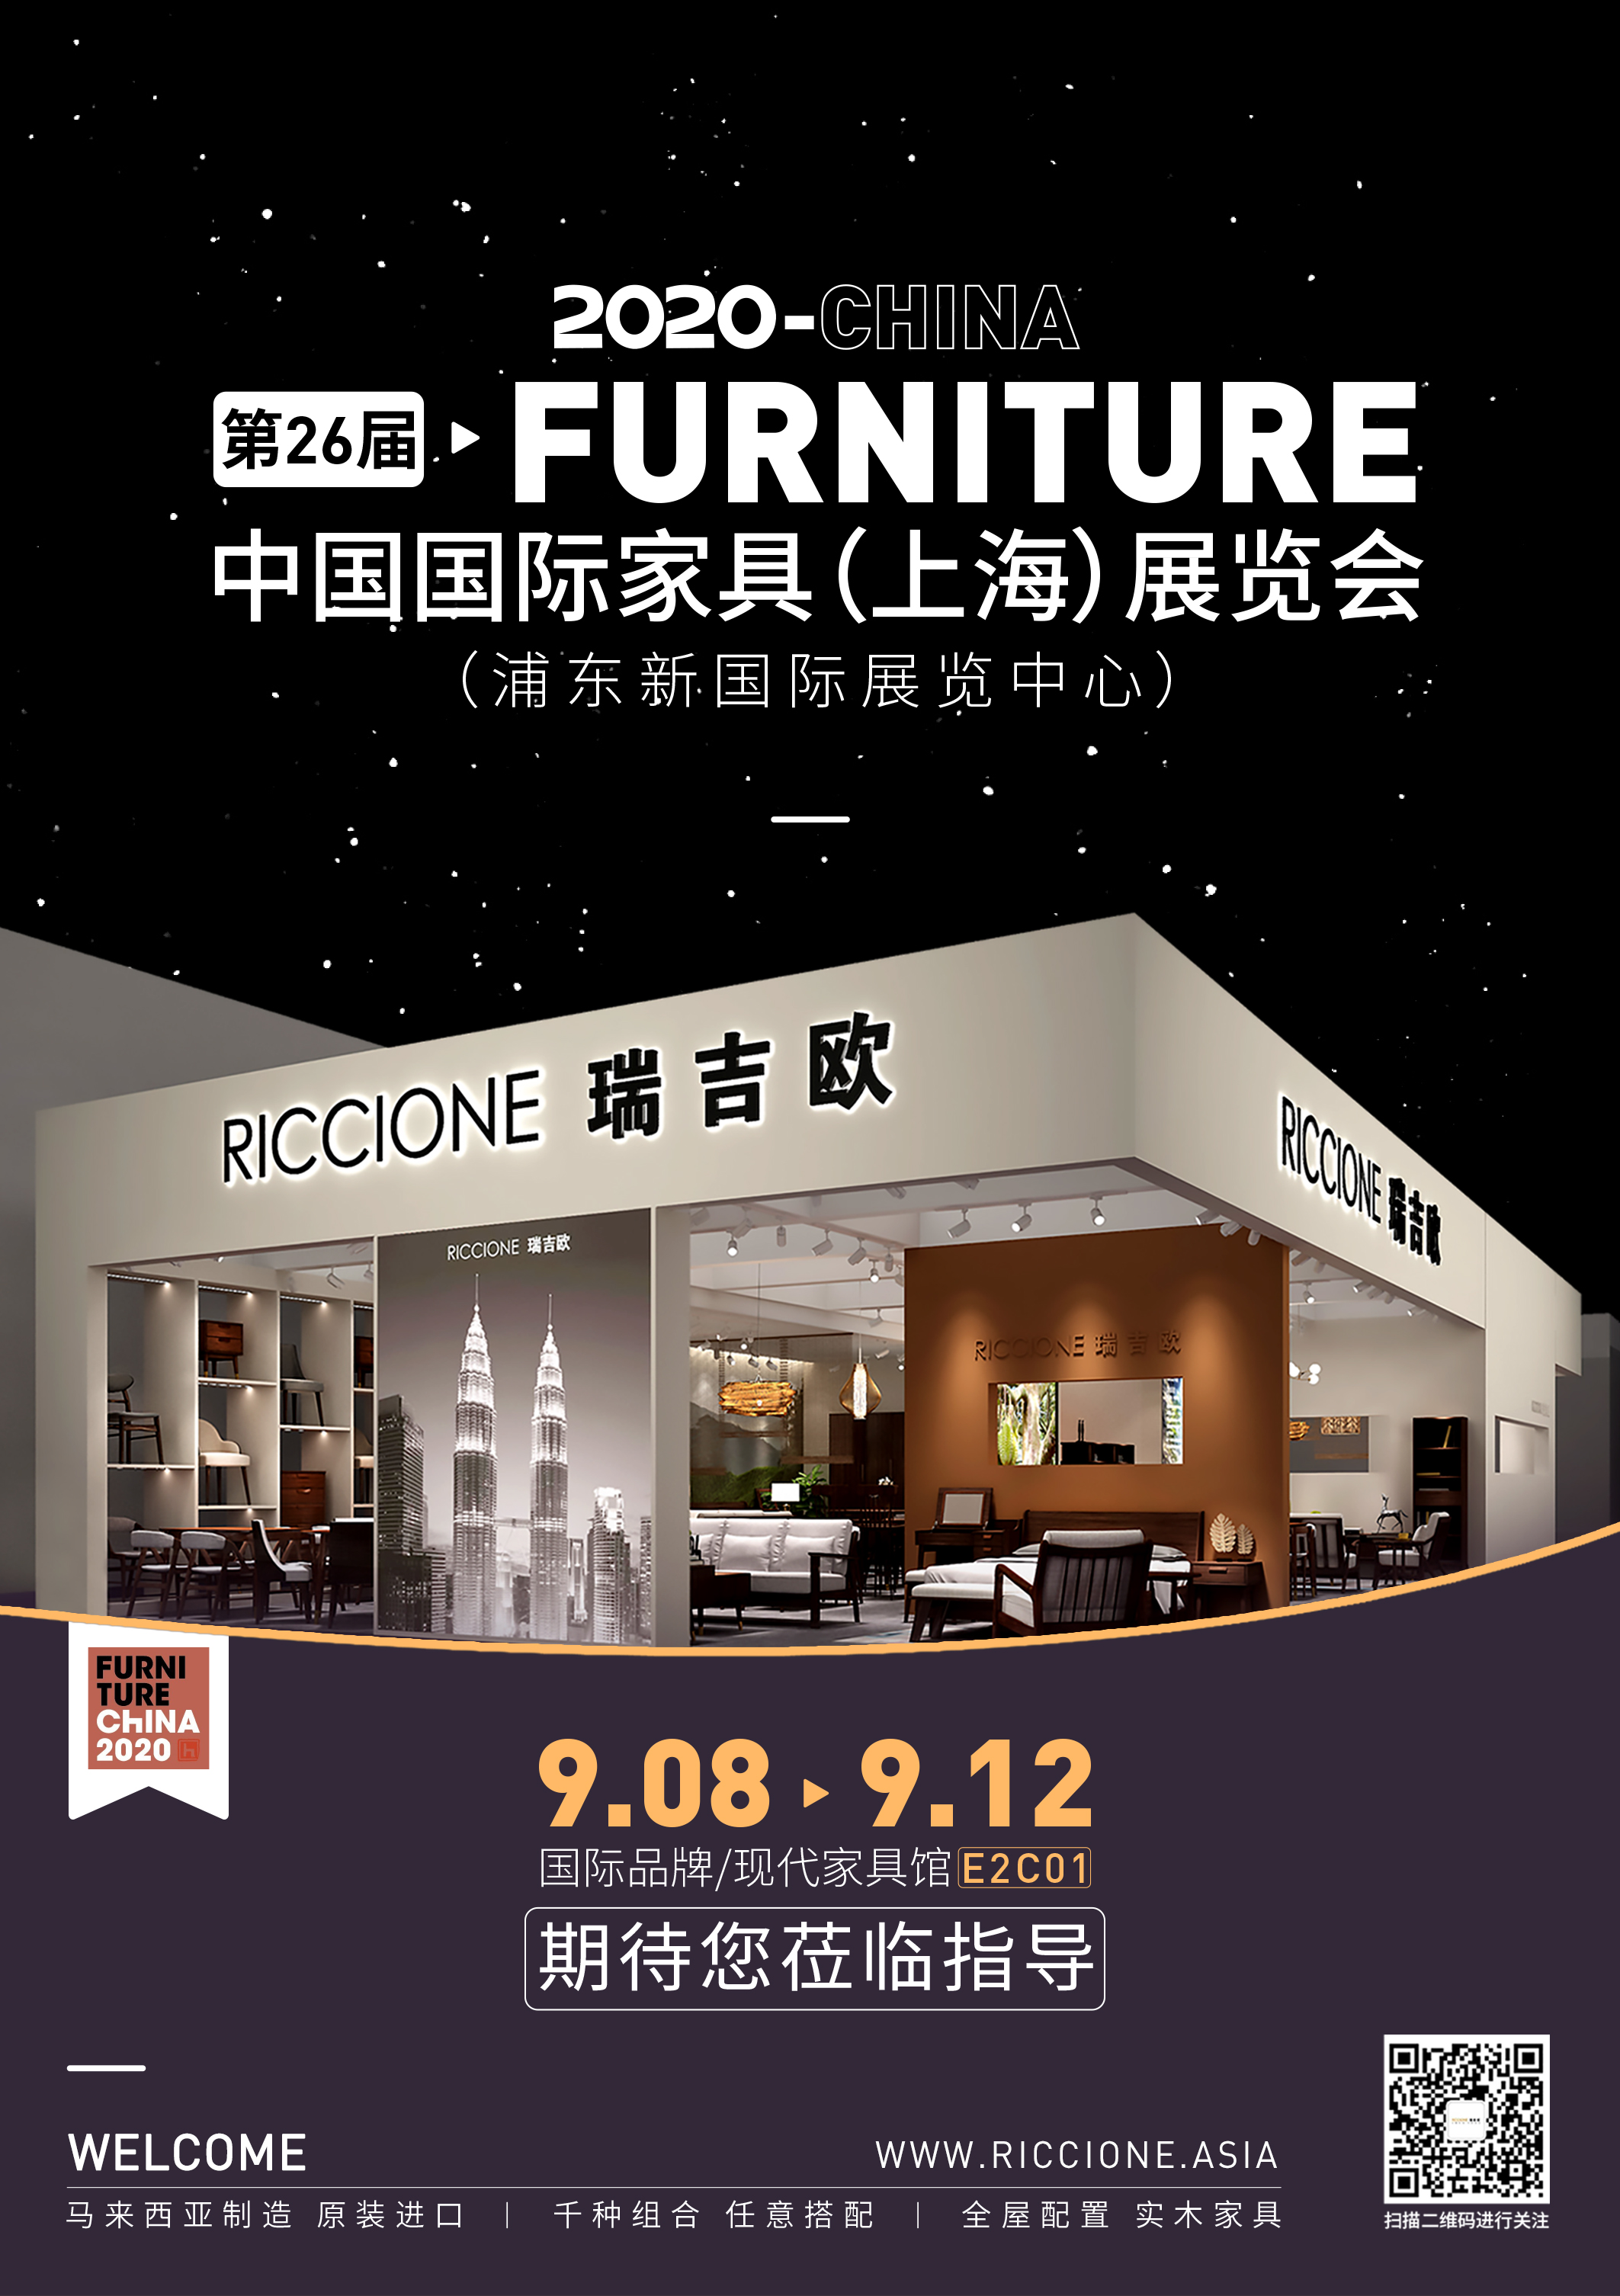 Online Exhibition 2020 - Shanghai International Furniture